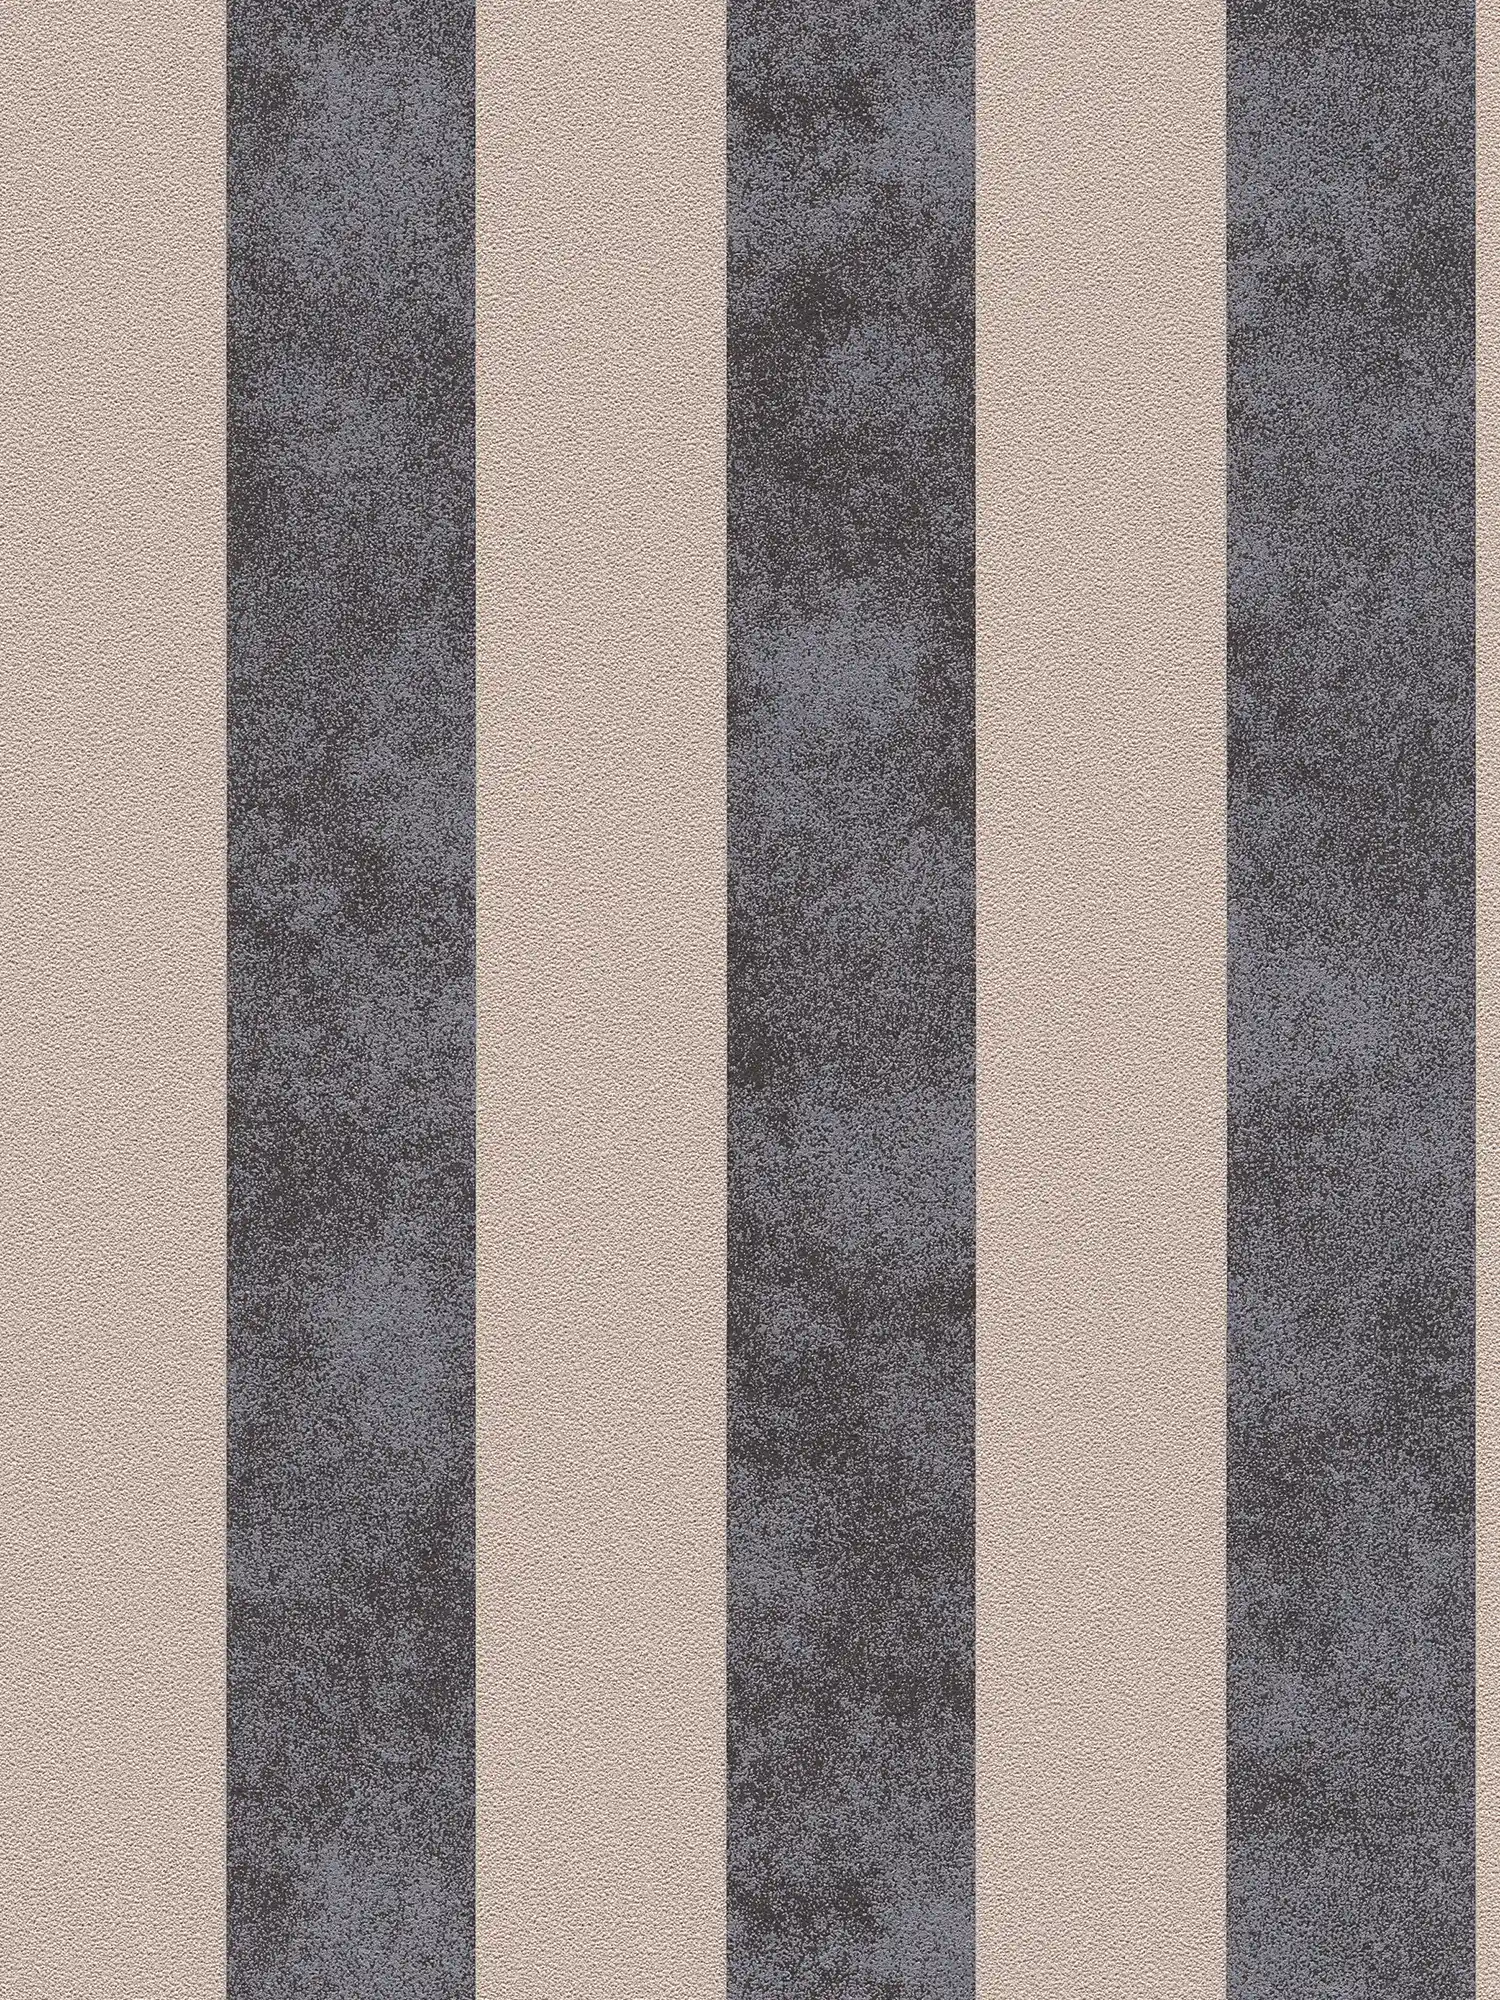 Papier peint à rayures en bloc avec motifs colorés et texturés - noir, beige, argenté
